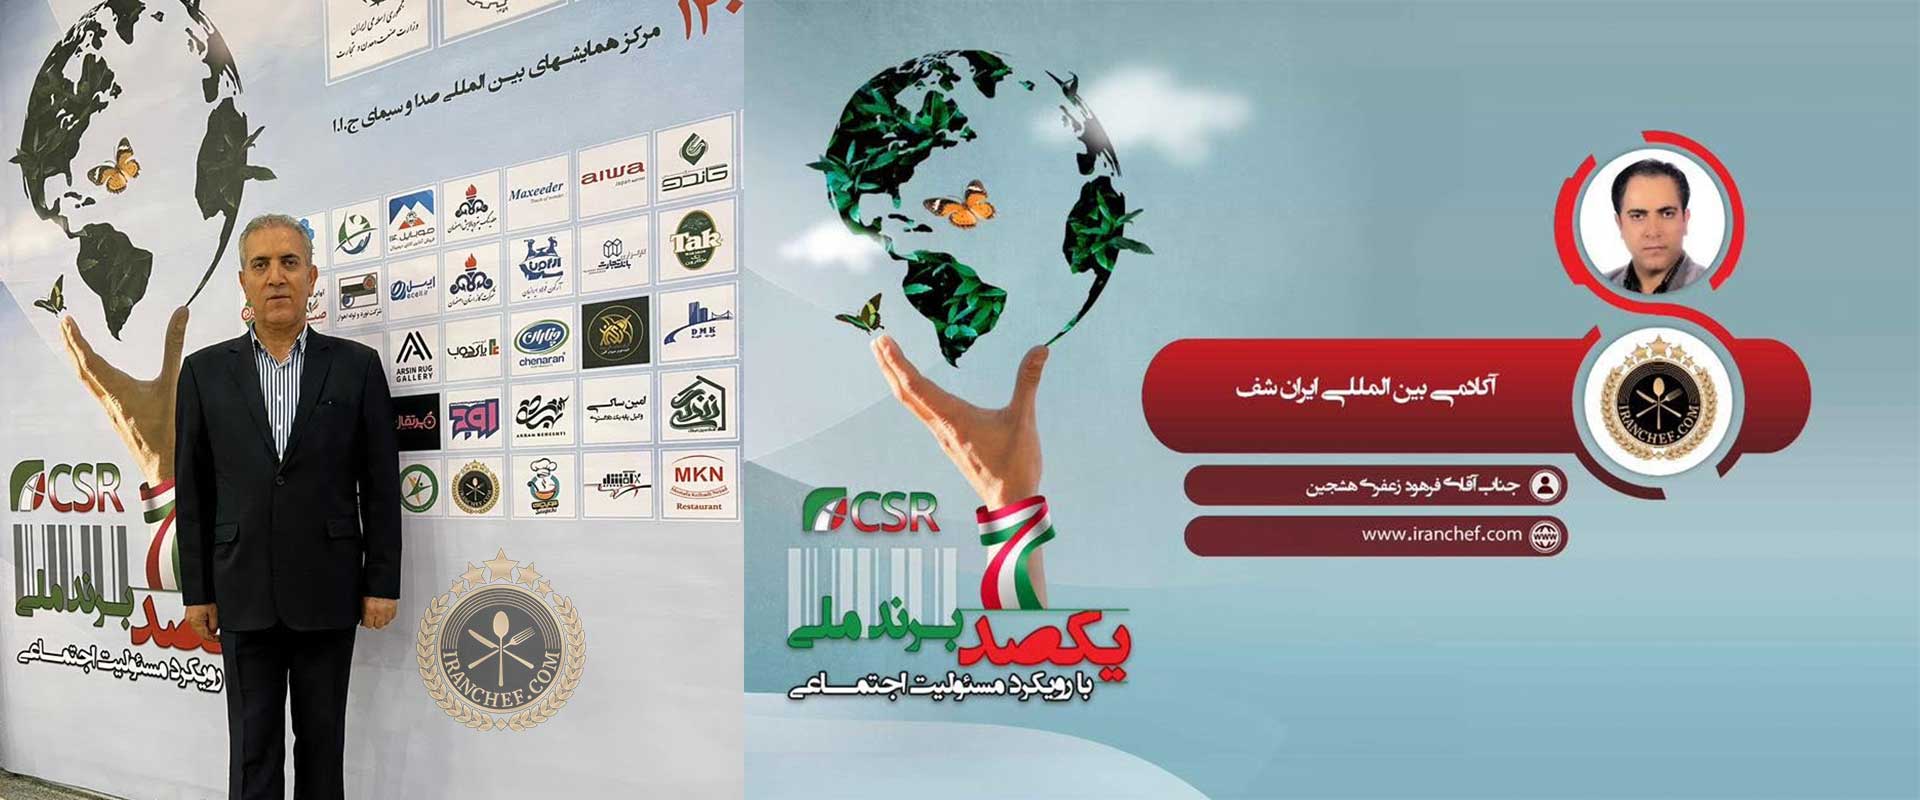 انتخاب آکادمی ایران شف به عنوان برند برتر ملی در حوزه آموزش